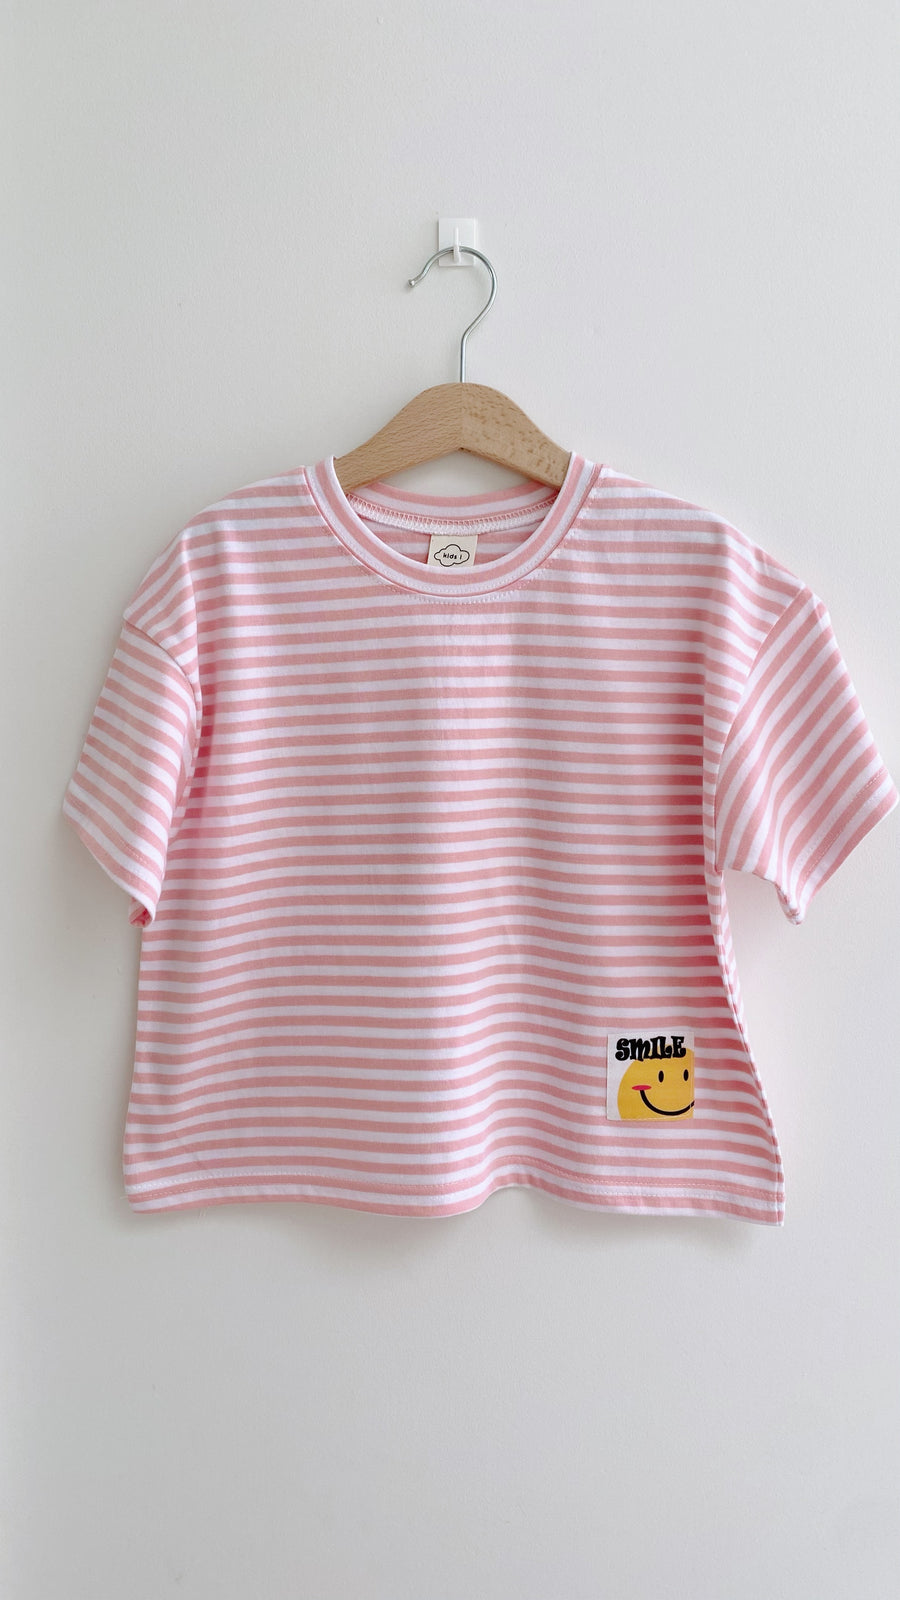 Smile T-shirt set pink (1 + 1)